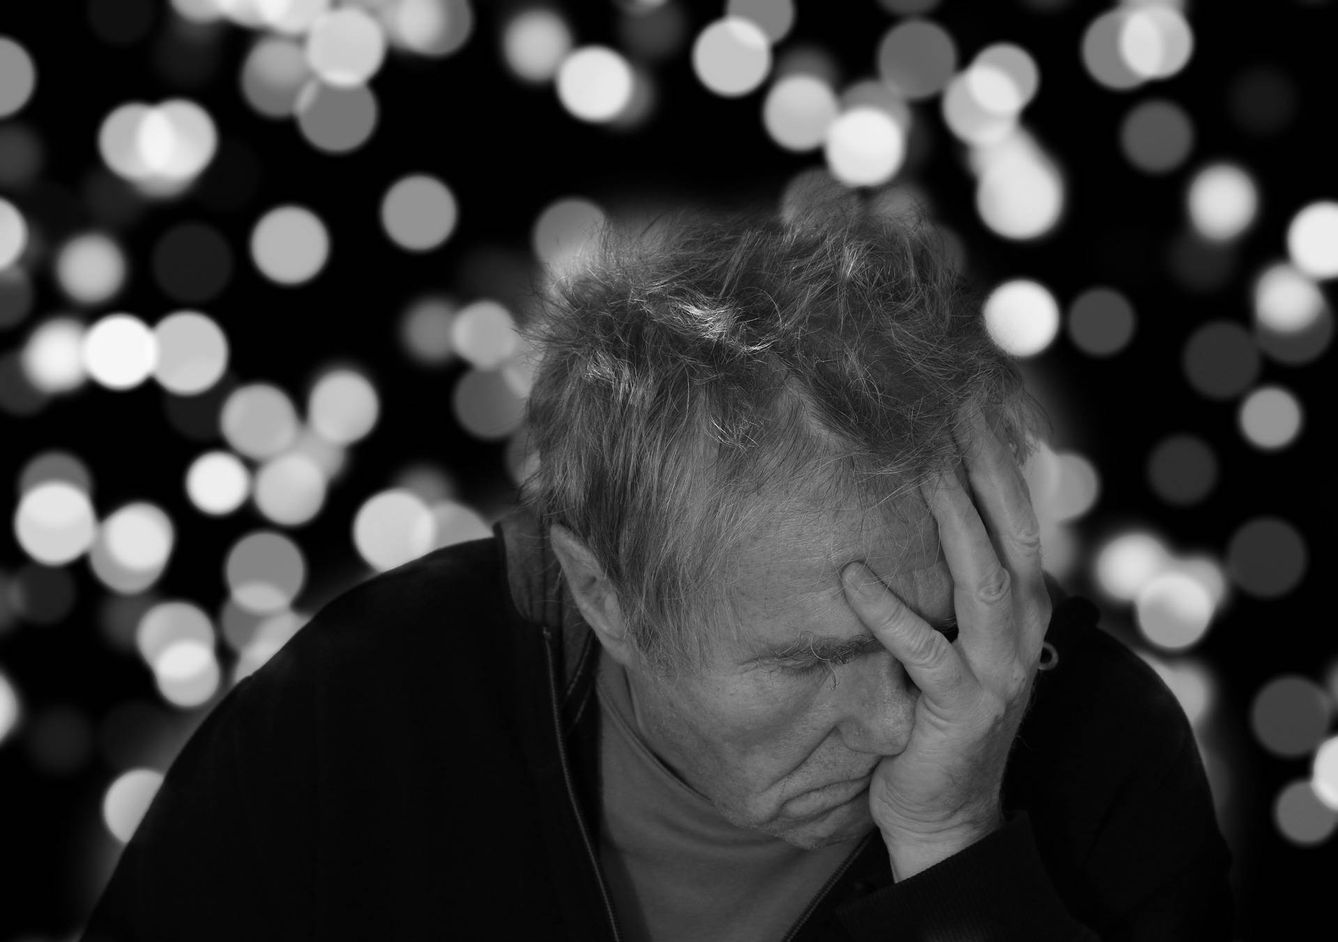 El alzhéimer afectará a más de 100 millones de personas en pocos años. (Pixabay)